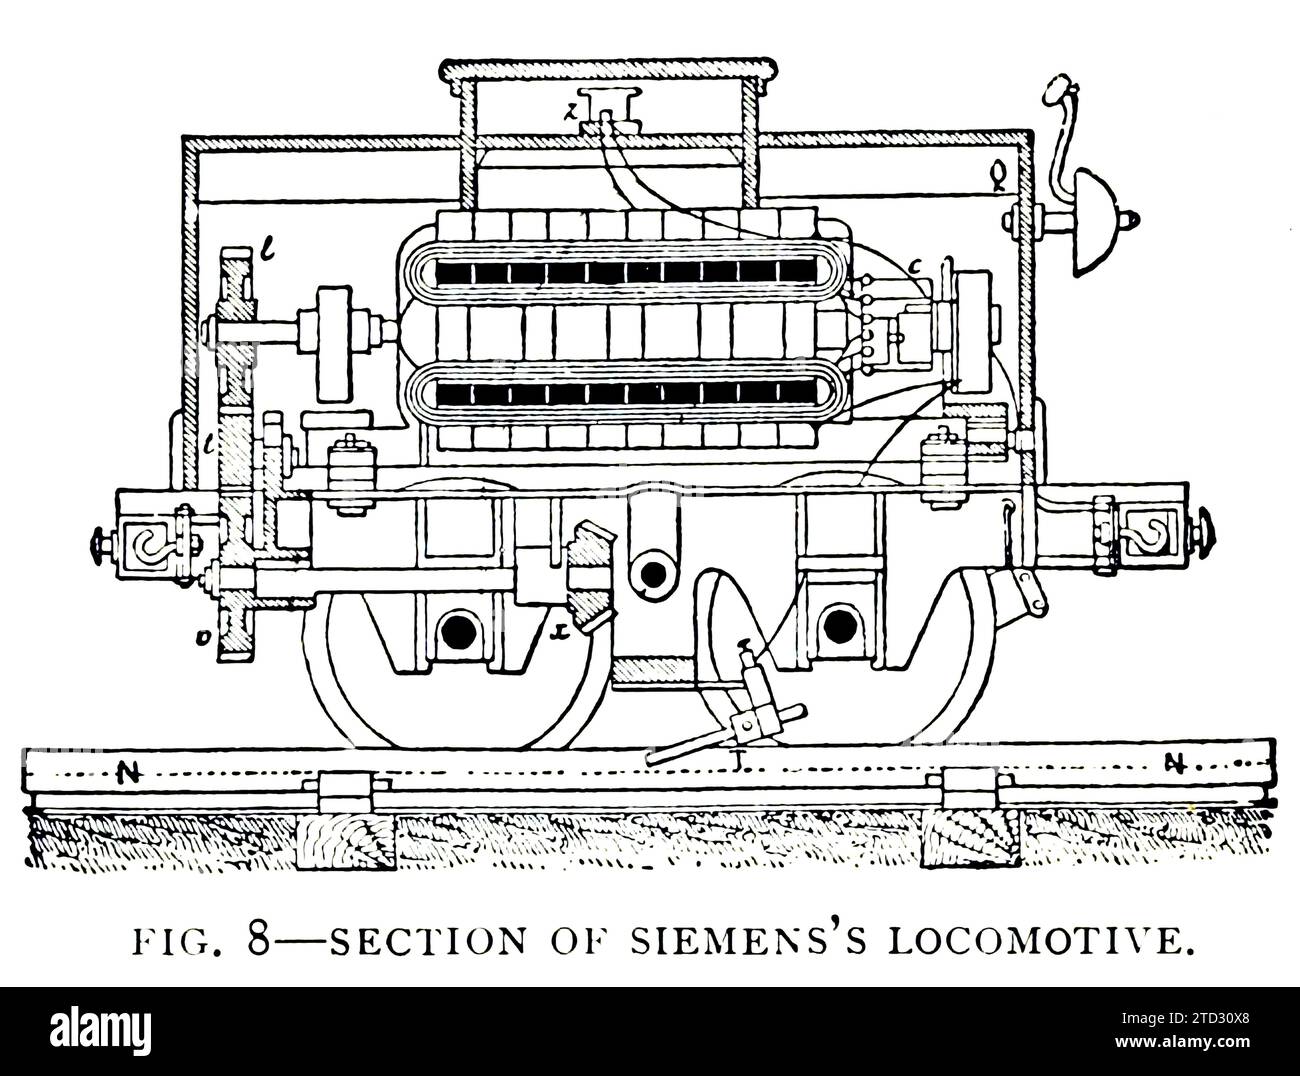 Illustrazione di una sezione di una locomotiva Siemens. Da "Development of the Electric Locomotive" di B J Arnold, da The Engineering Magazine, volume VII, 1894. Foto Stock